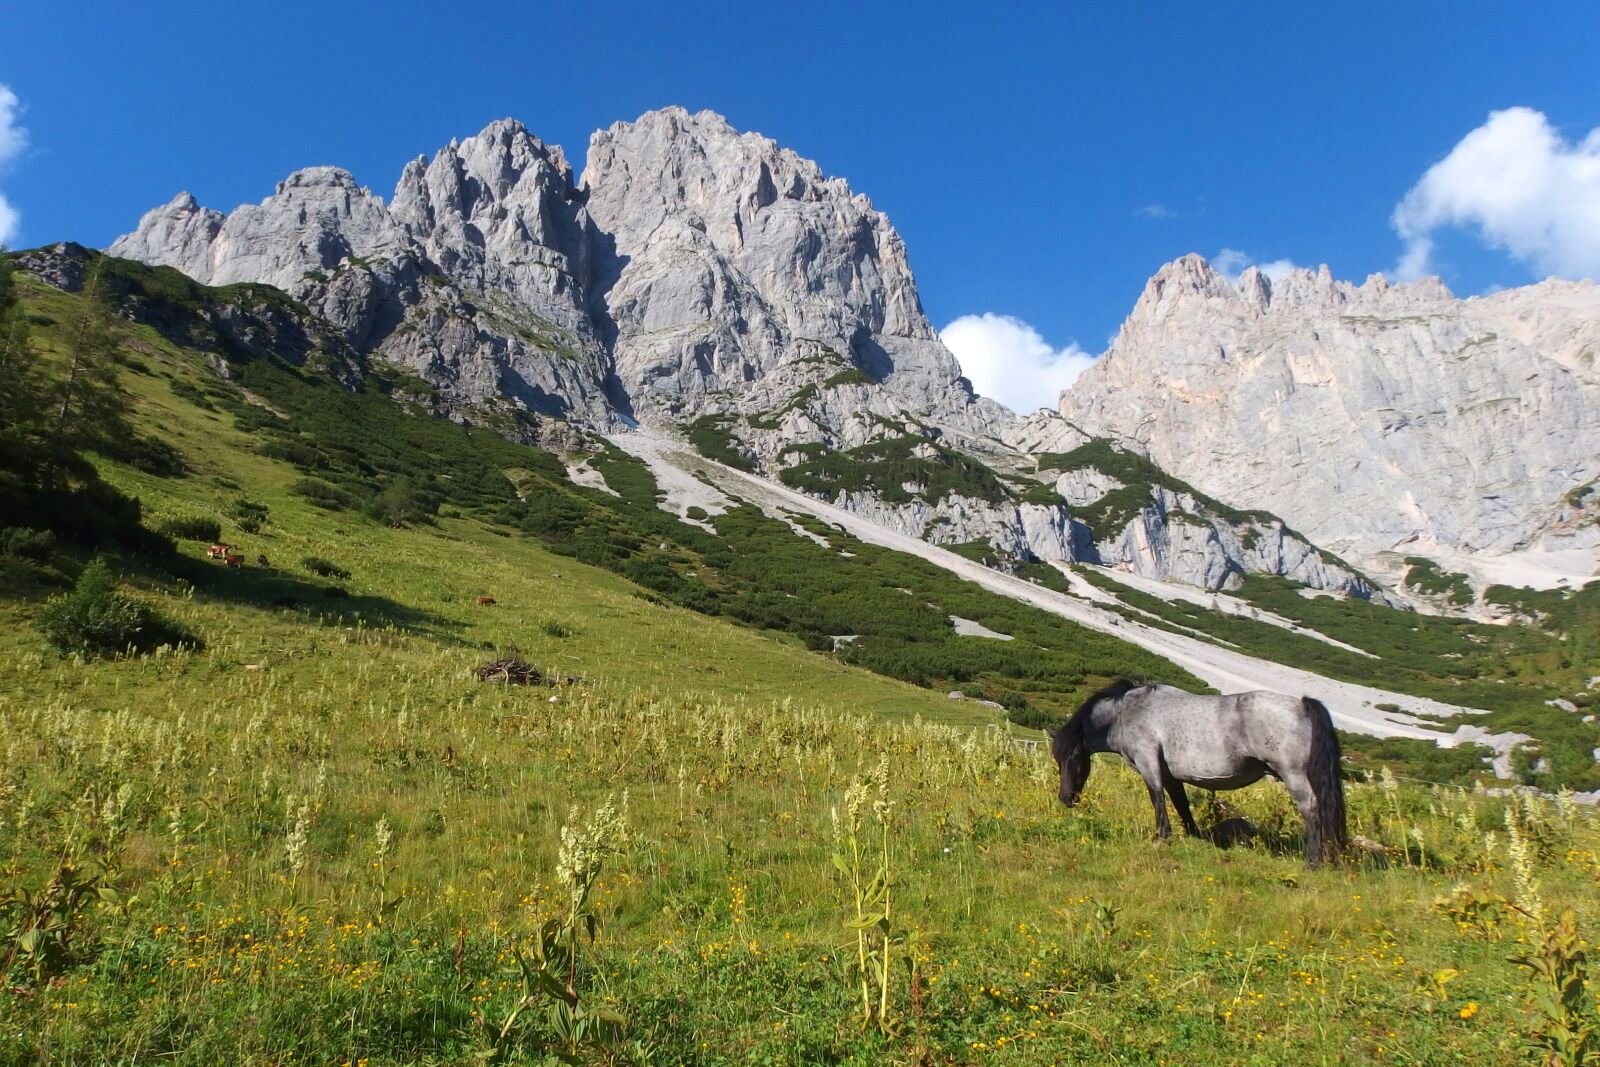 Olympus Stylus XZ-10 sample photo. Mountains, the horse, landscape photography